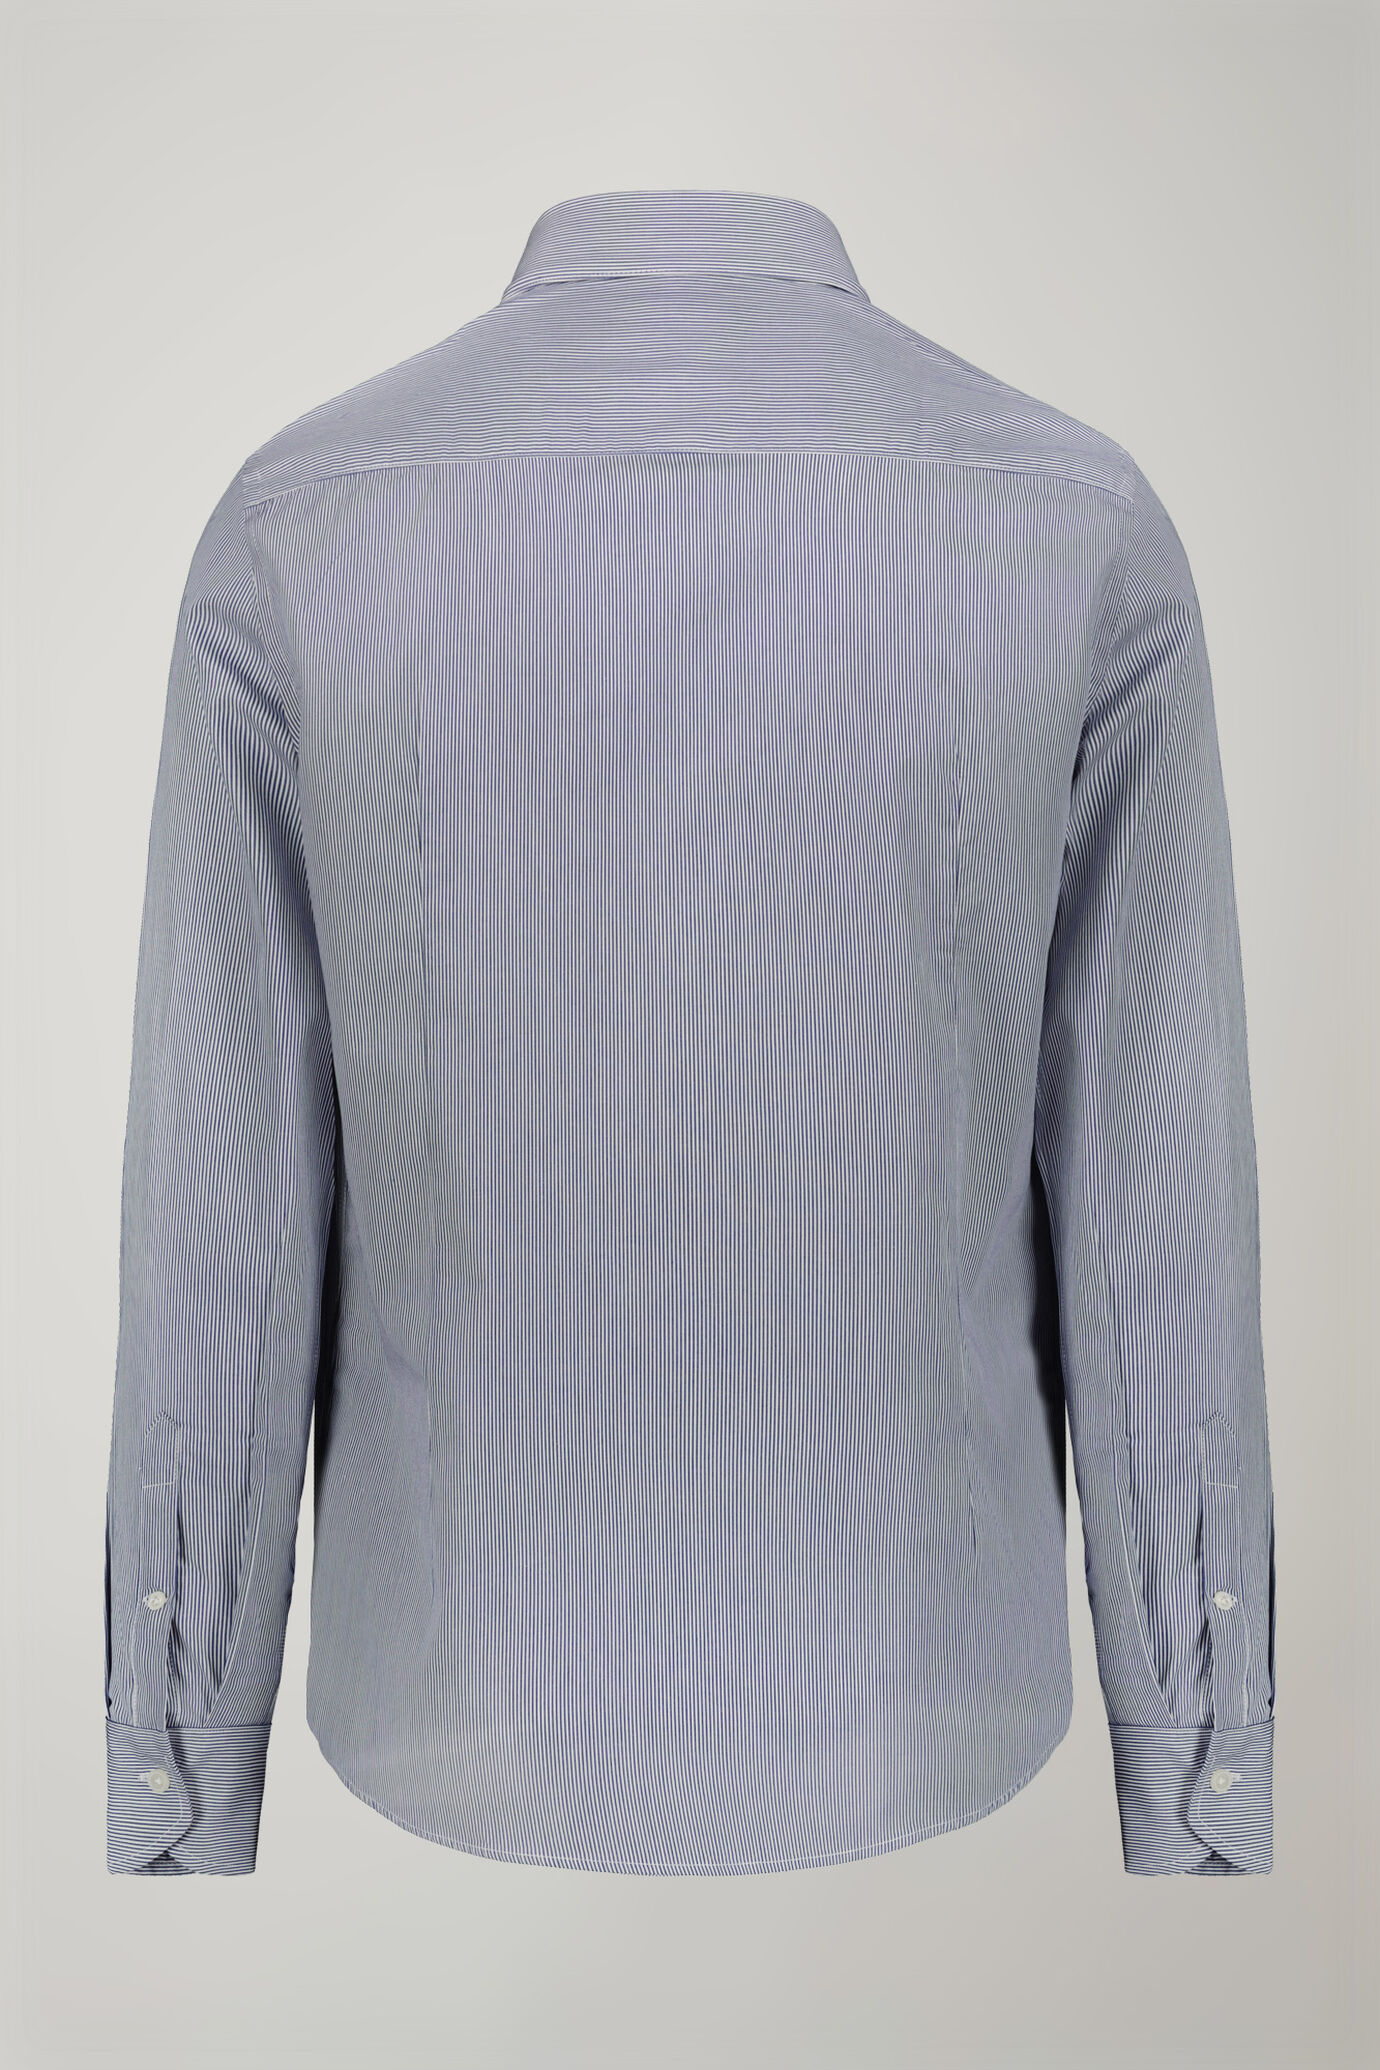 Camicia uomo collo classico 100% cotone tessuto tinto filo a righe regular fit image number 6